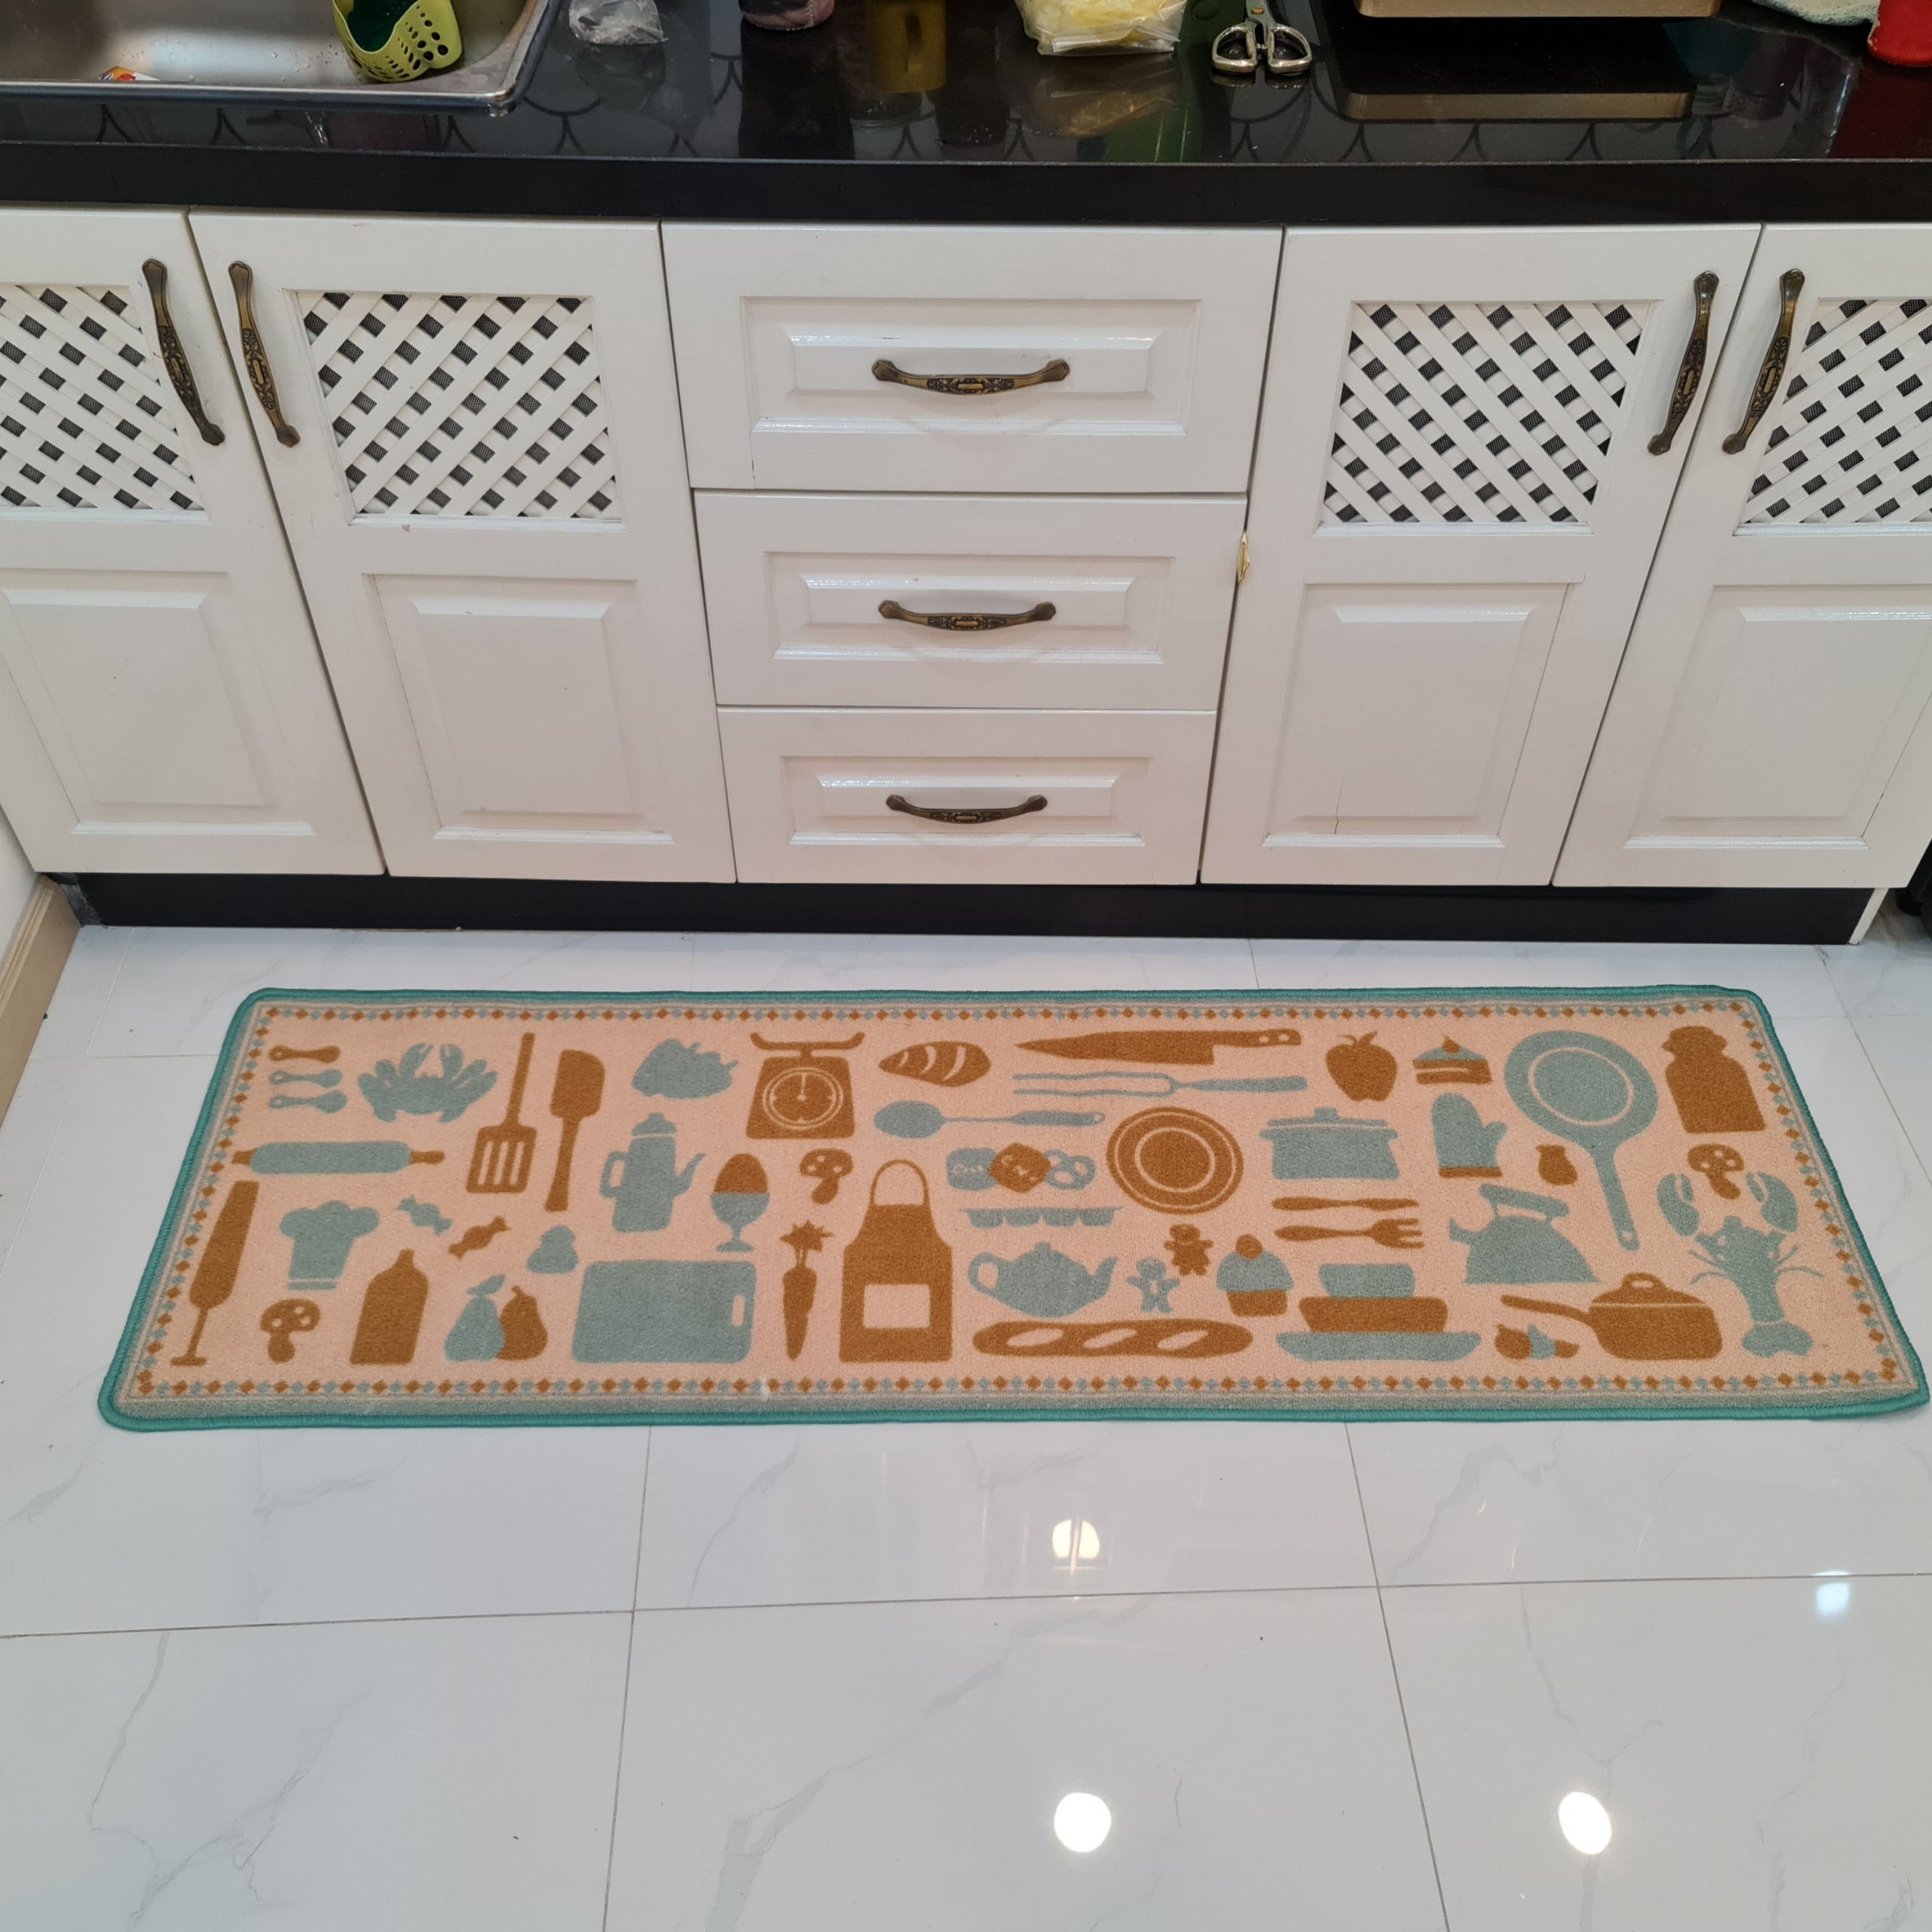 Thảm bếp lam là sản phẩm tuyệt vời để trang trí cho gian bếp của bạn. Với màu xanh nam tính, thảm bếp này là sự lựa chọn hoàn hảo để tạo nên không gian bếp đẹp mắt và thu hút.